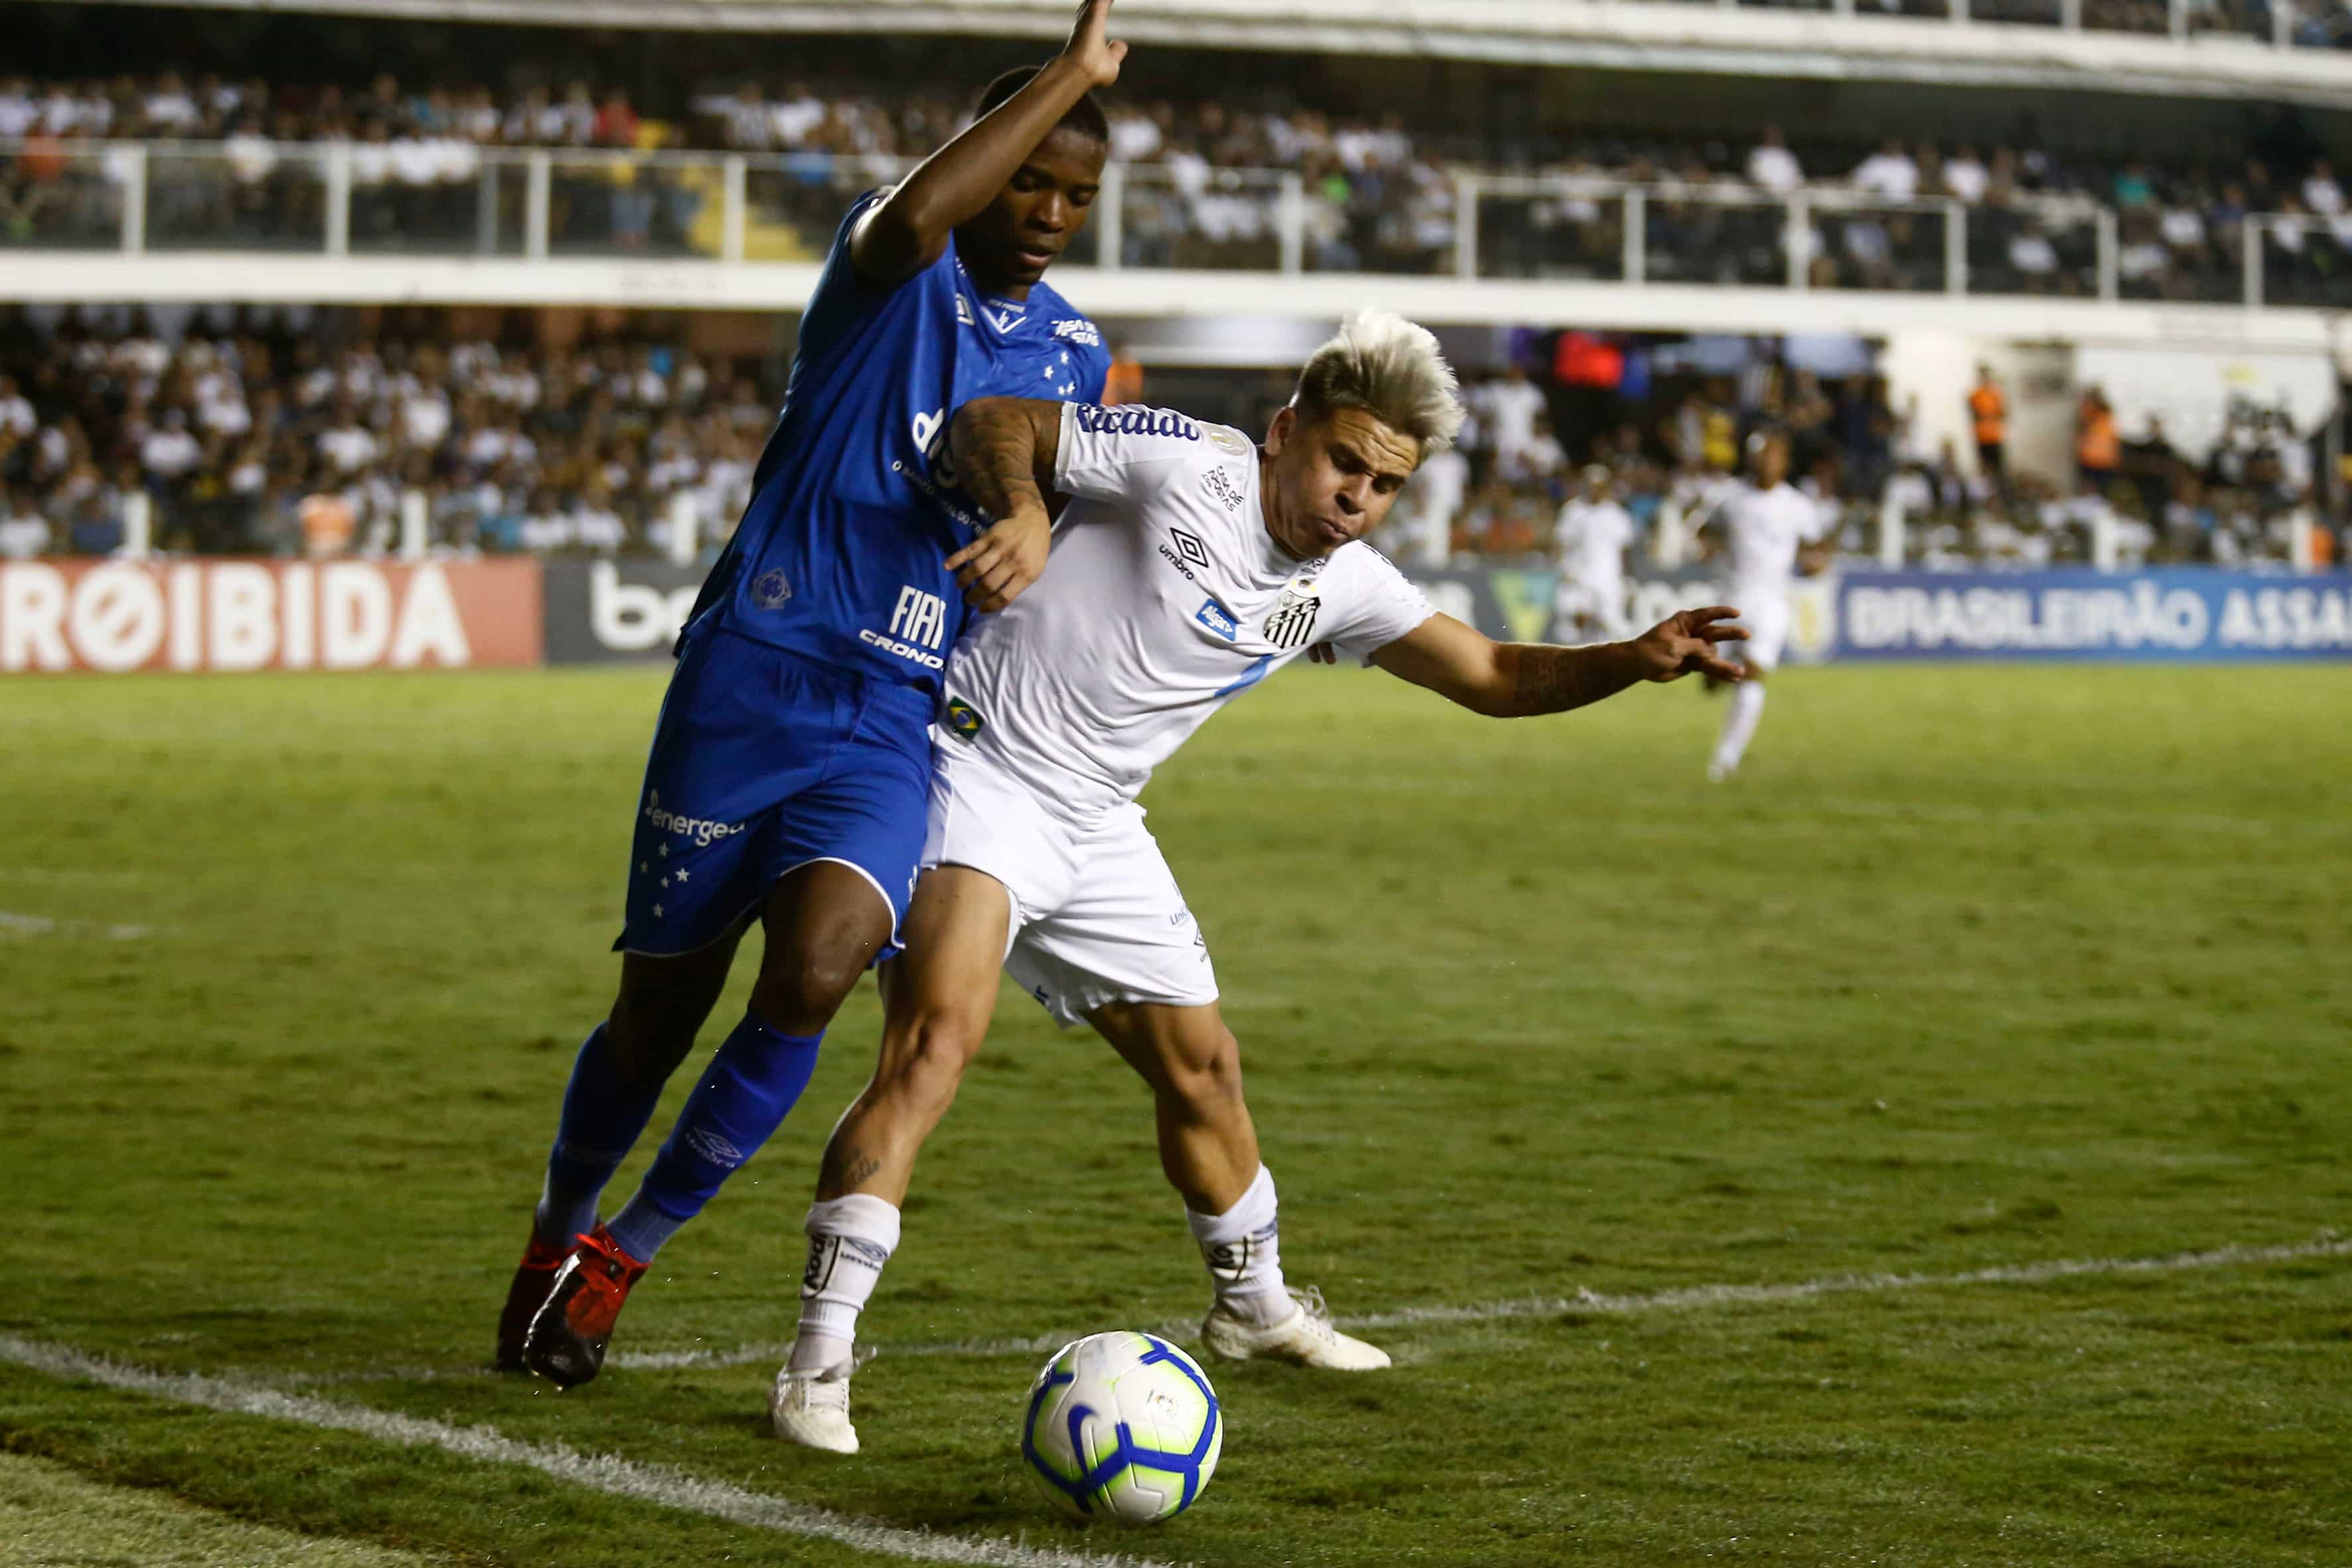 Com roubadas de bola e incrível velocidade de Marinho e Soteldo, o time fez quatro gols